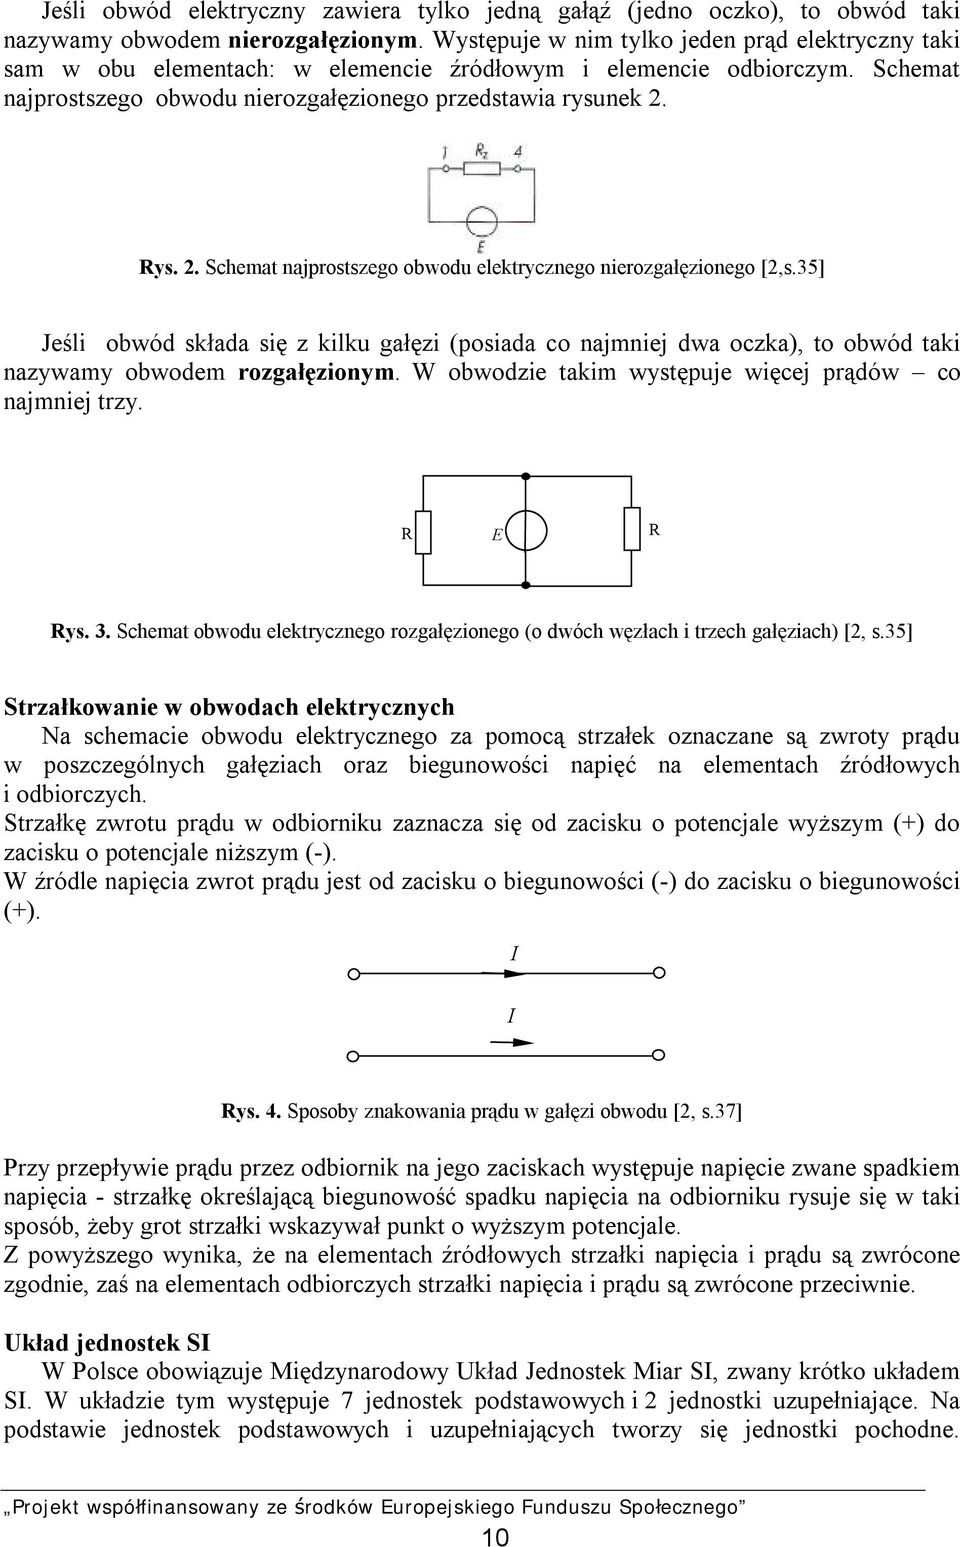 Rys. 2. Schemat najprostszego obwodu elektrycznego nierozgałęzionego [2,s.35] Jeśli obwód składa się z kilku gałęzi (posiada co najmniej dwa oczka), to obwód taki nazywamy obwodem rozgałęzionym.